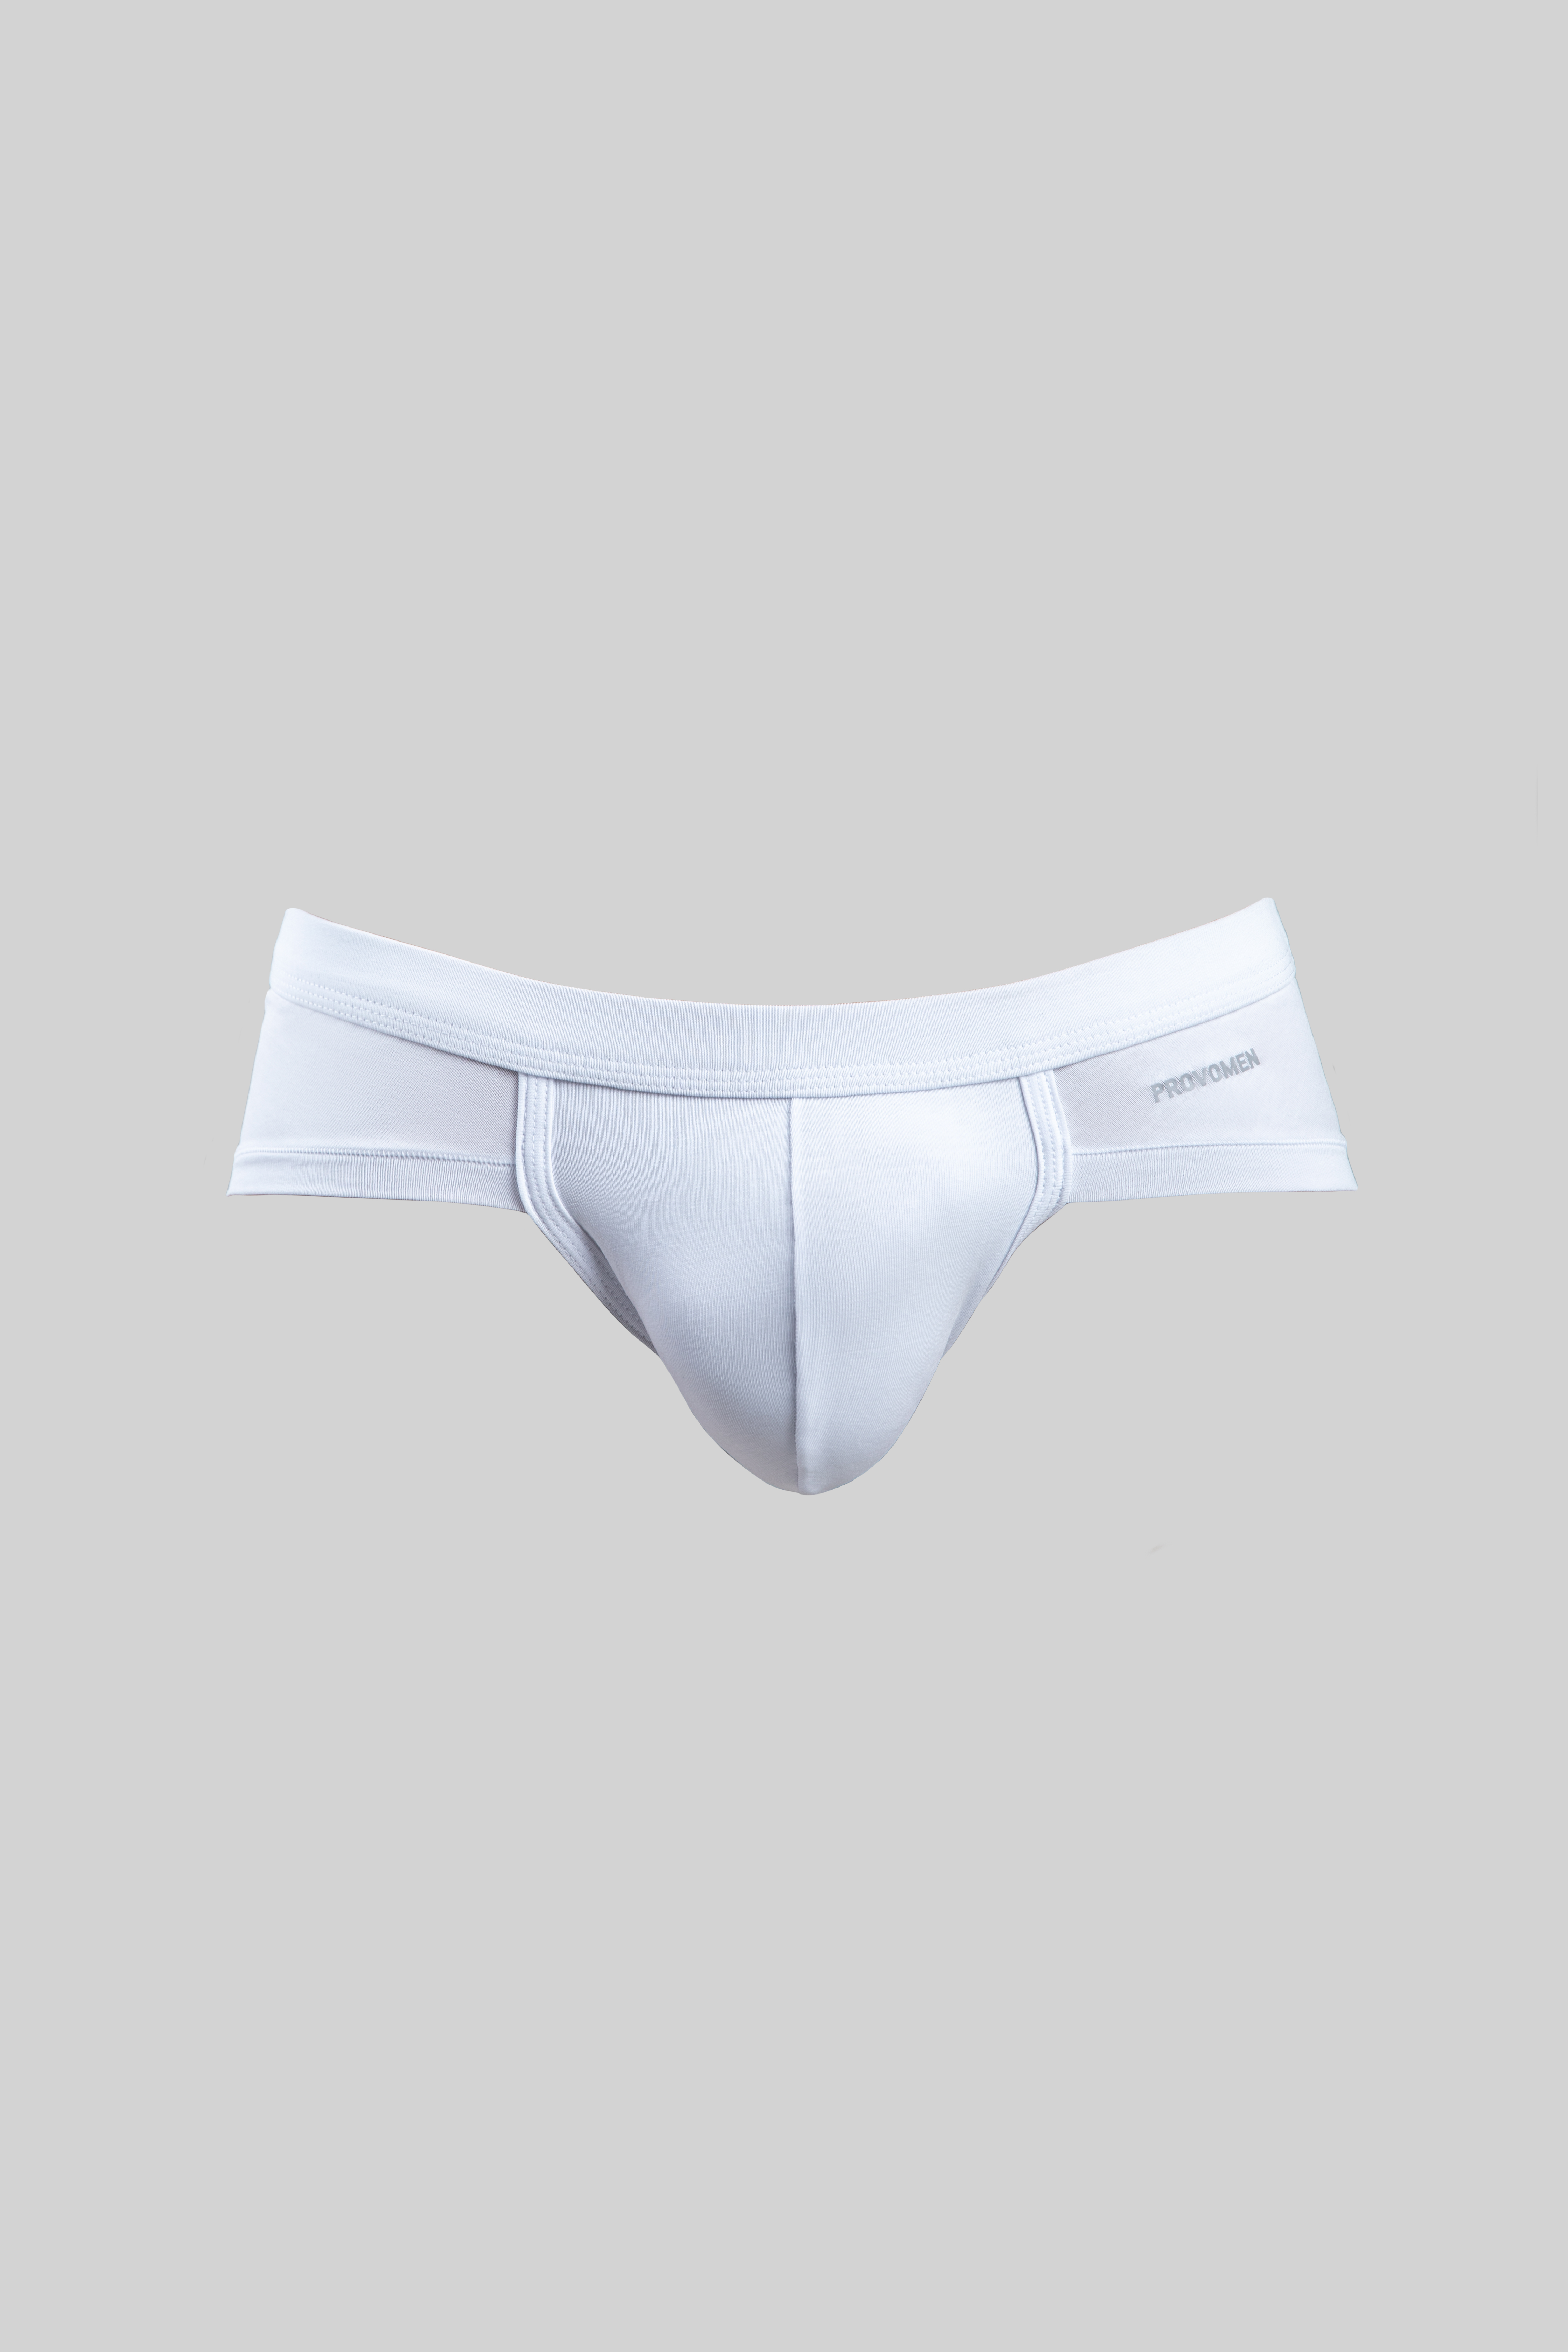 Hipster Briefs (Black) - official online store of men's underwear Provomen